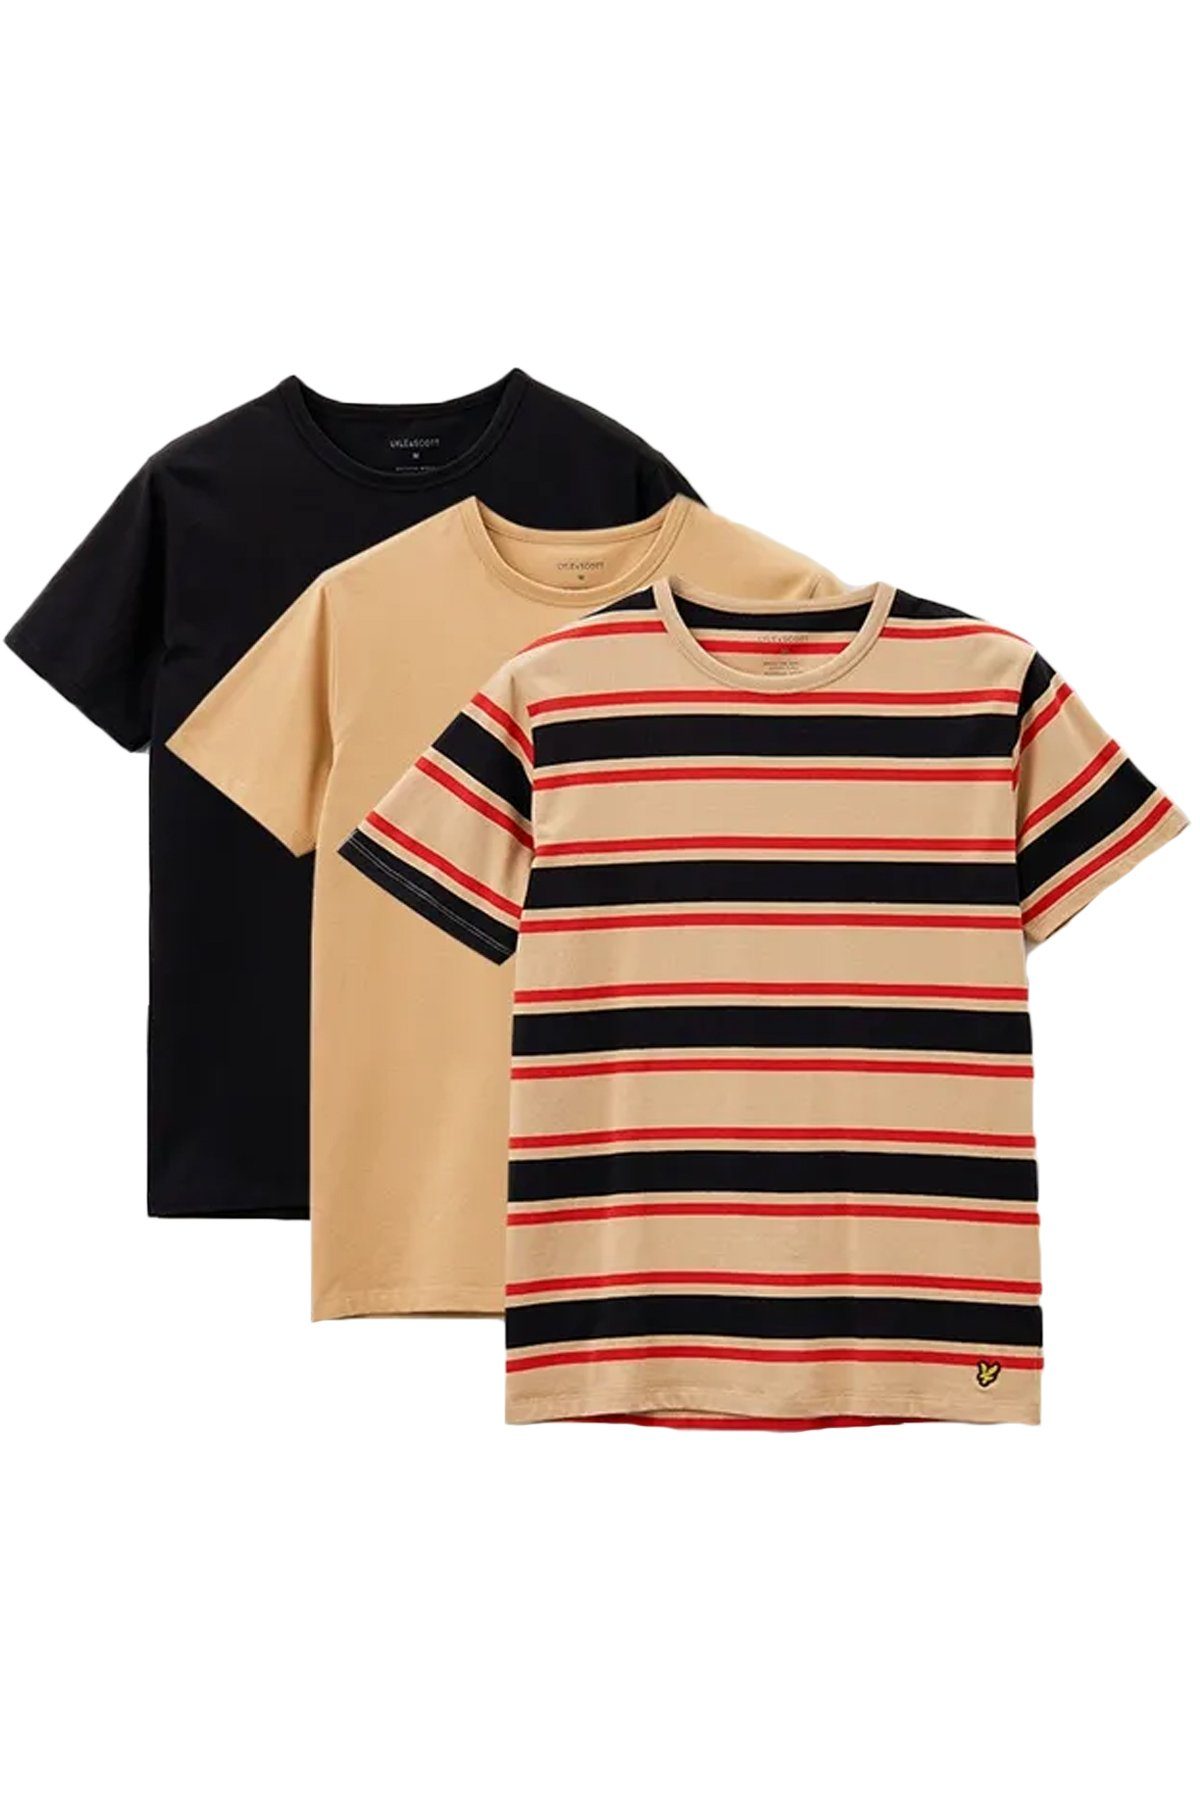 Lyle & Scott T-Shirt Basic Farben (3Er-Set) Teint/ Khaki Streifen/ Tiefschwarz